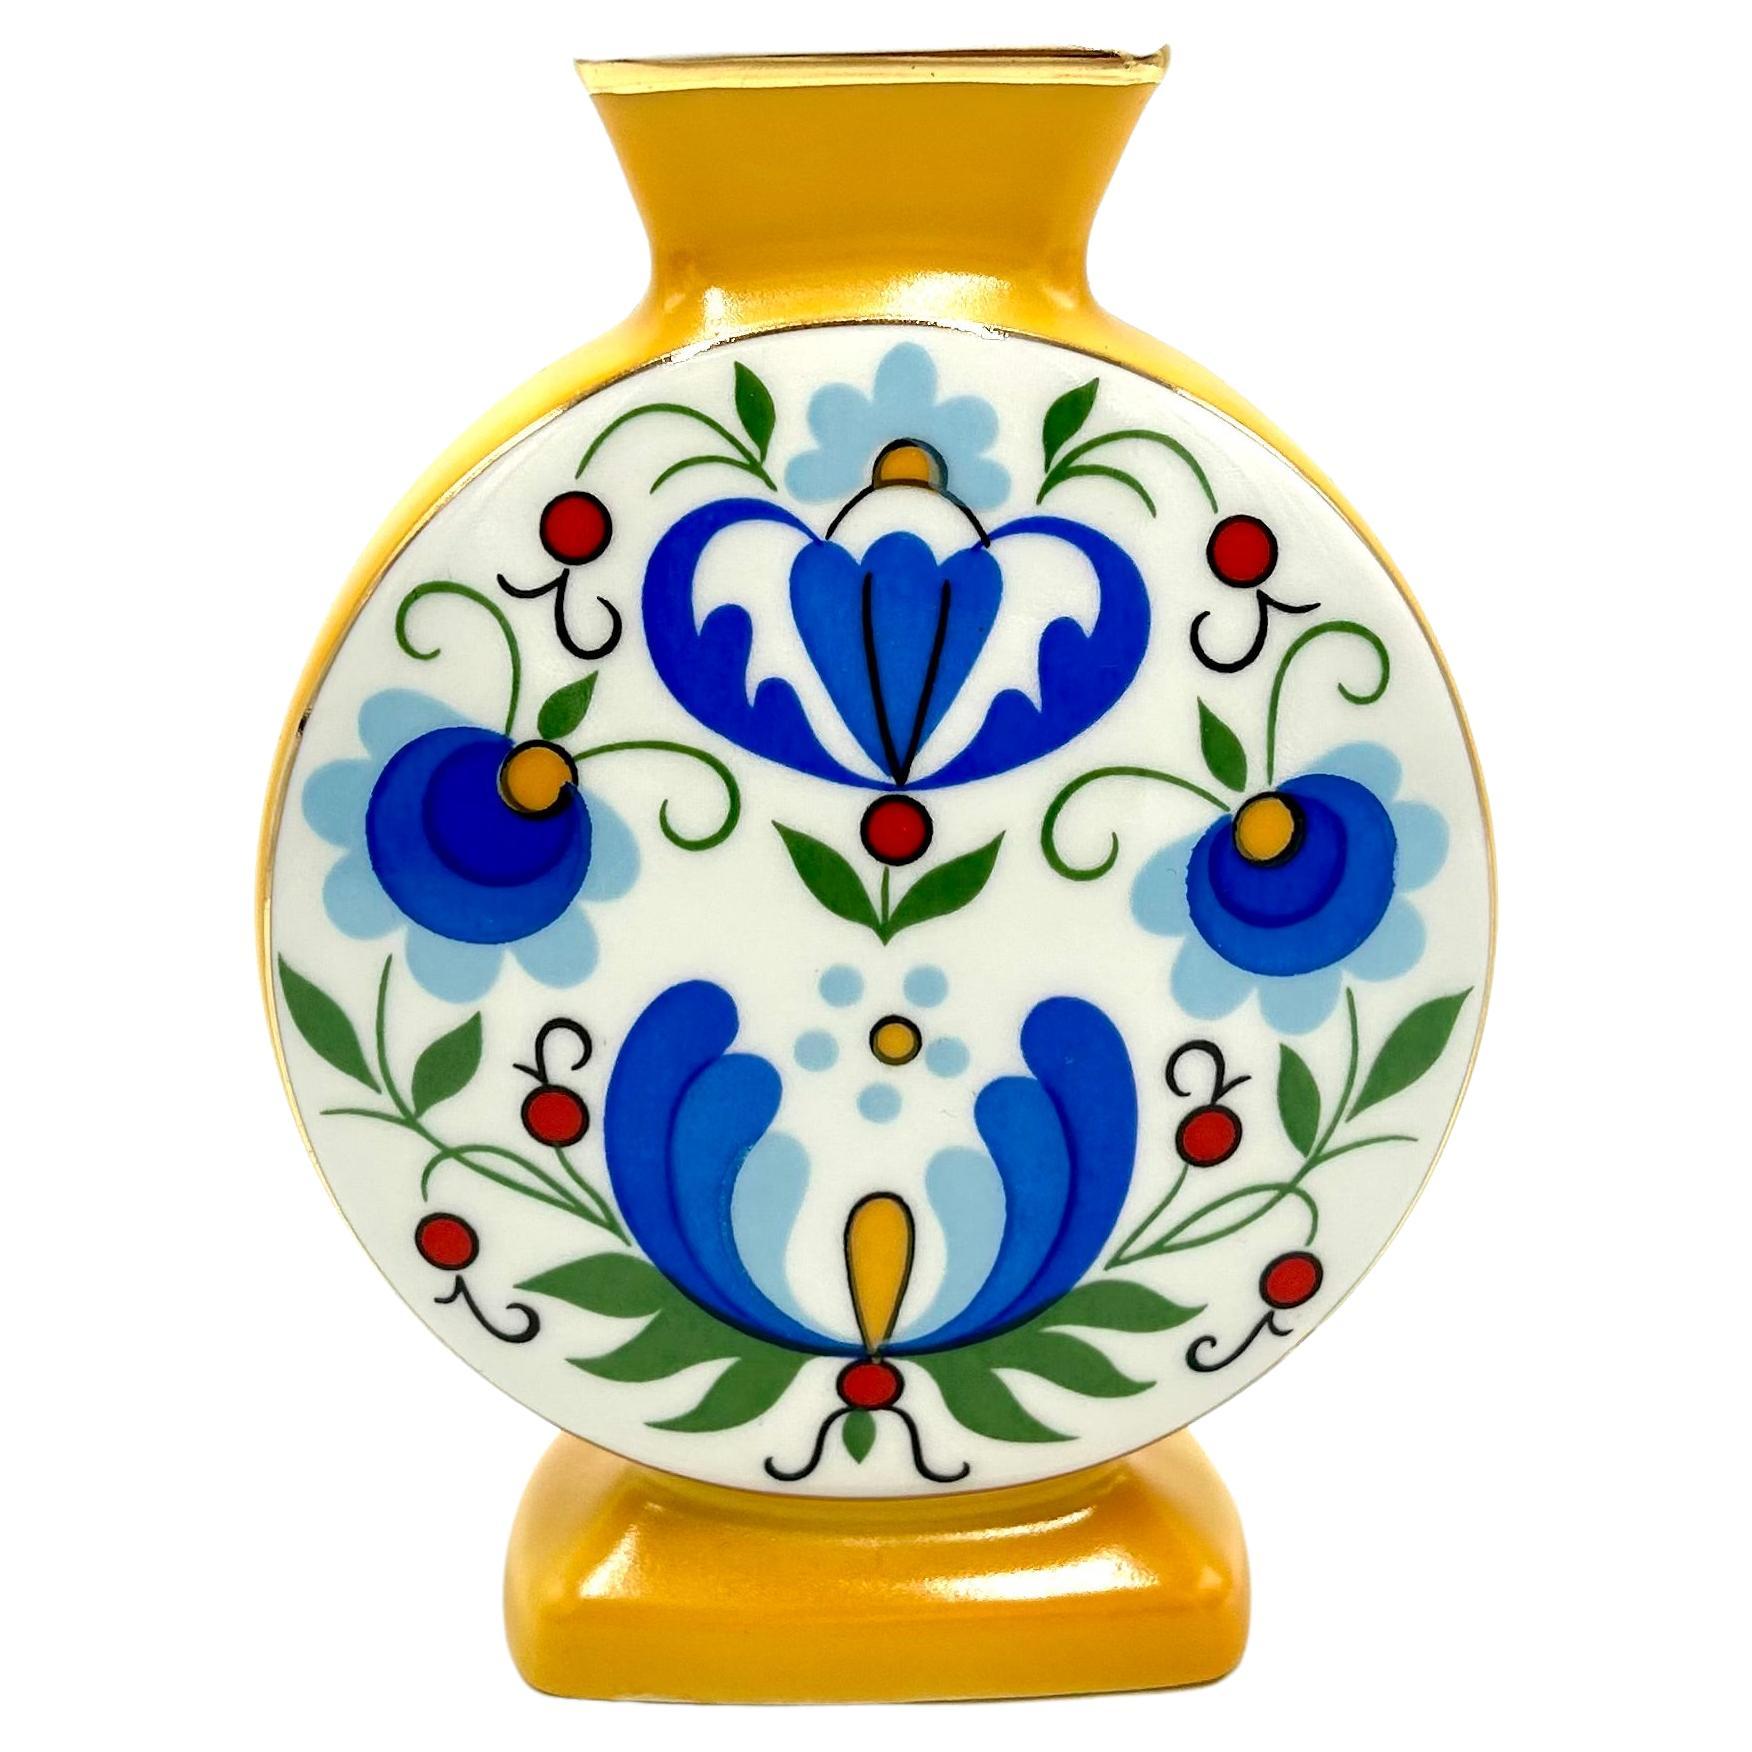 Vase mit volkstümlichen Mustern, Lubiana, Polen, 1970er Jahre